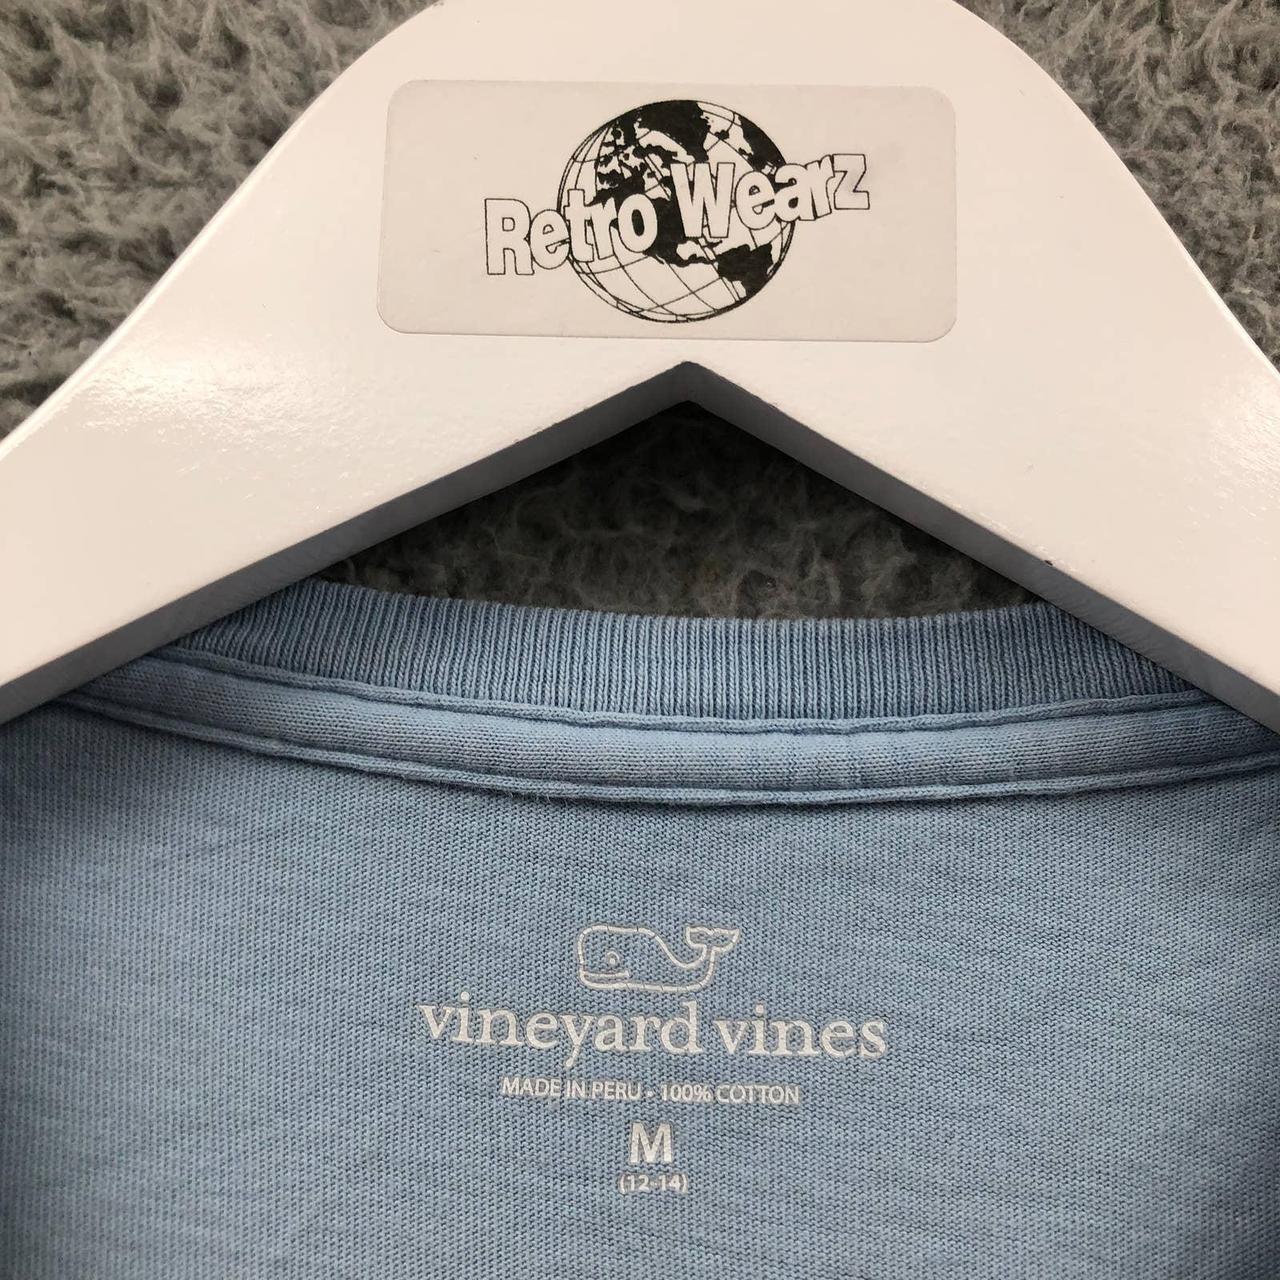 Excellent Condition Vineyard Vines Kids' T shirt, size M 12-14